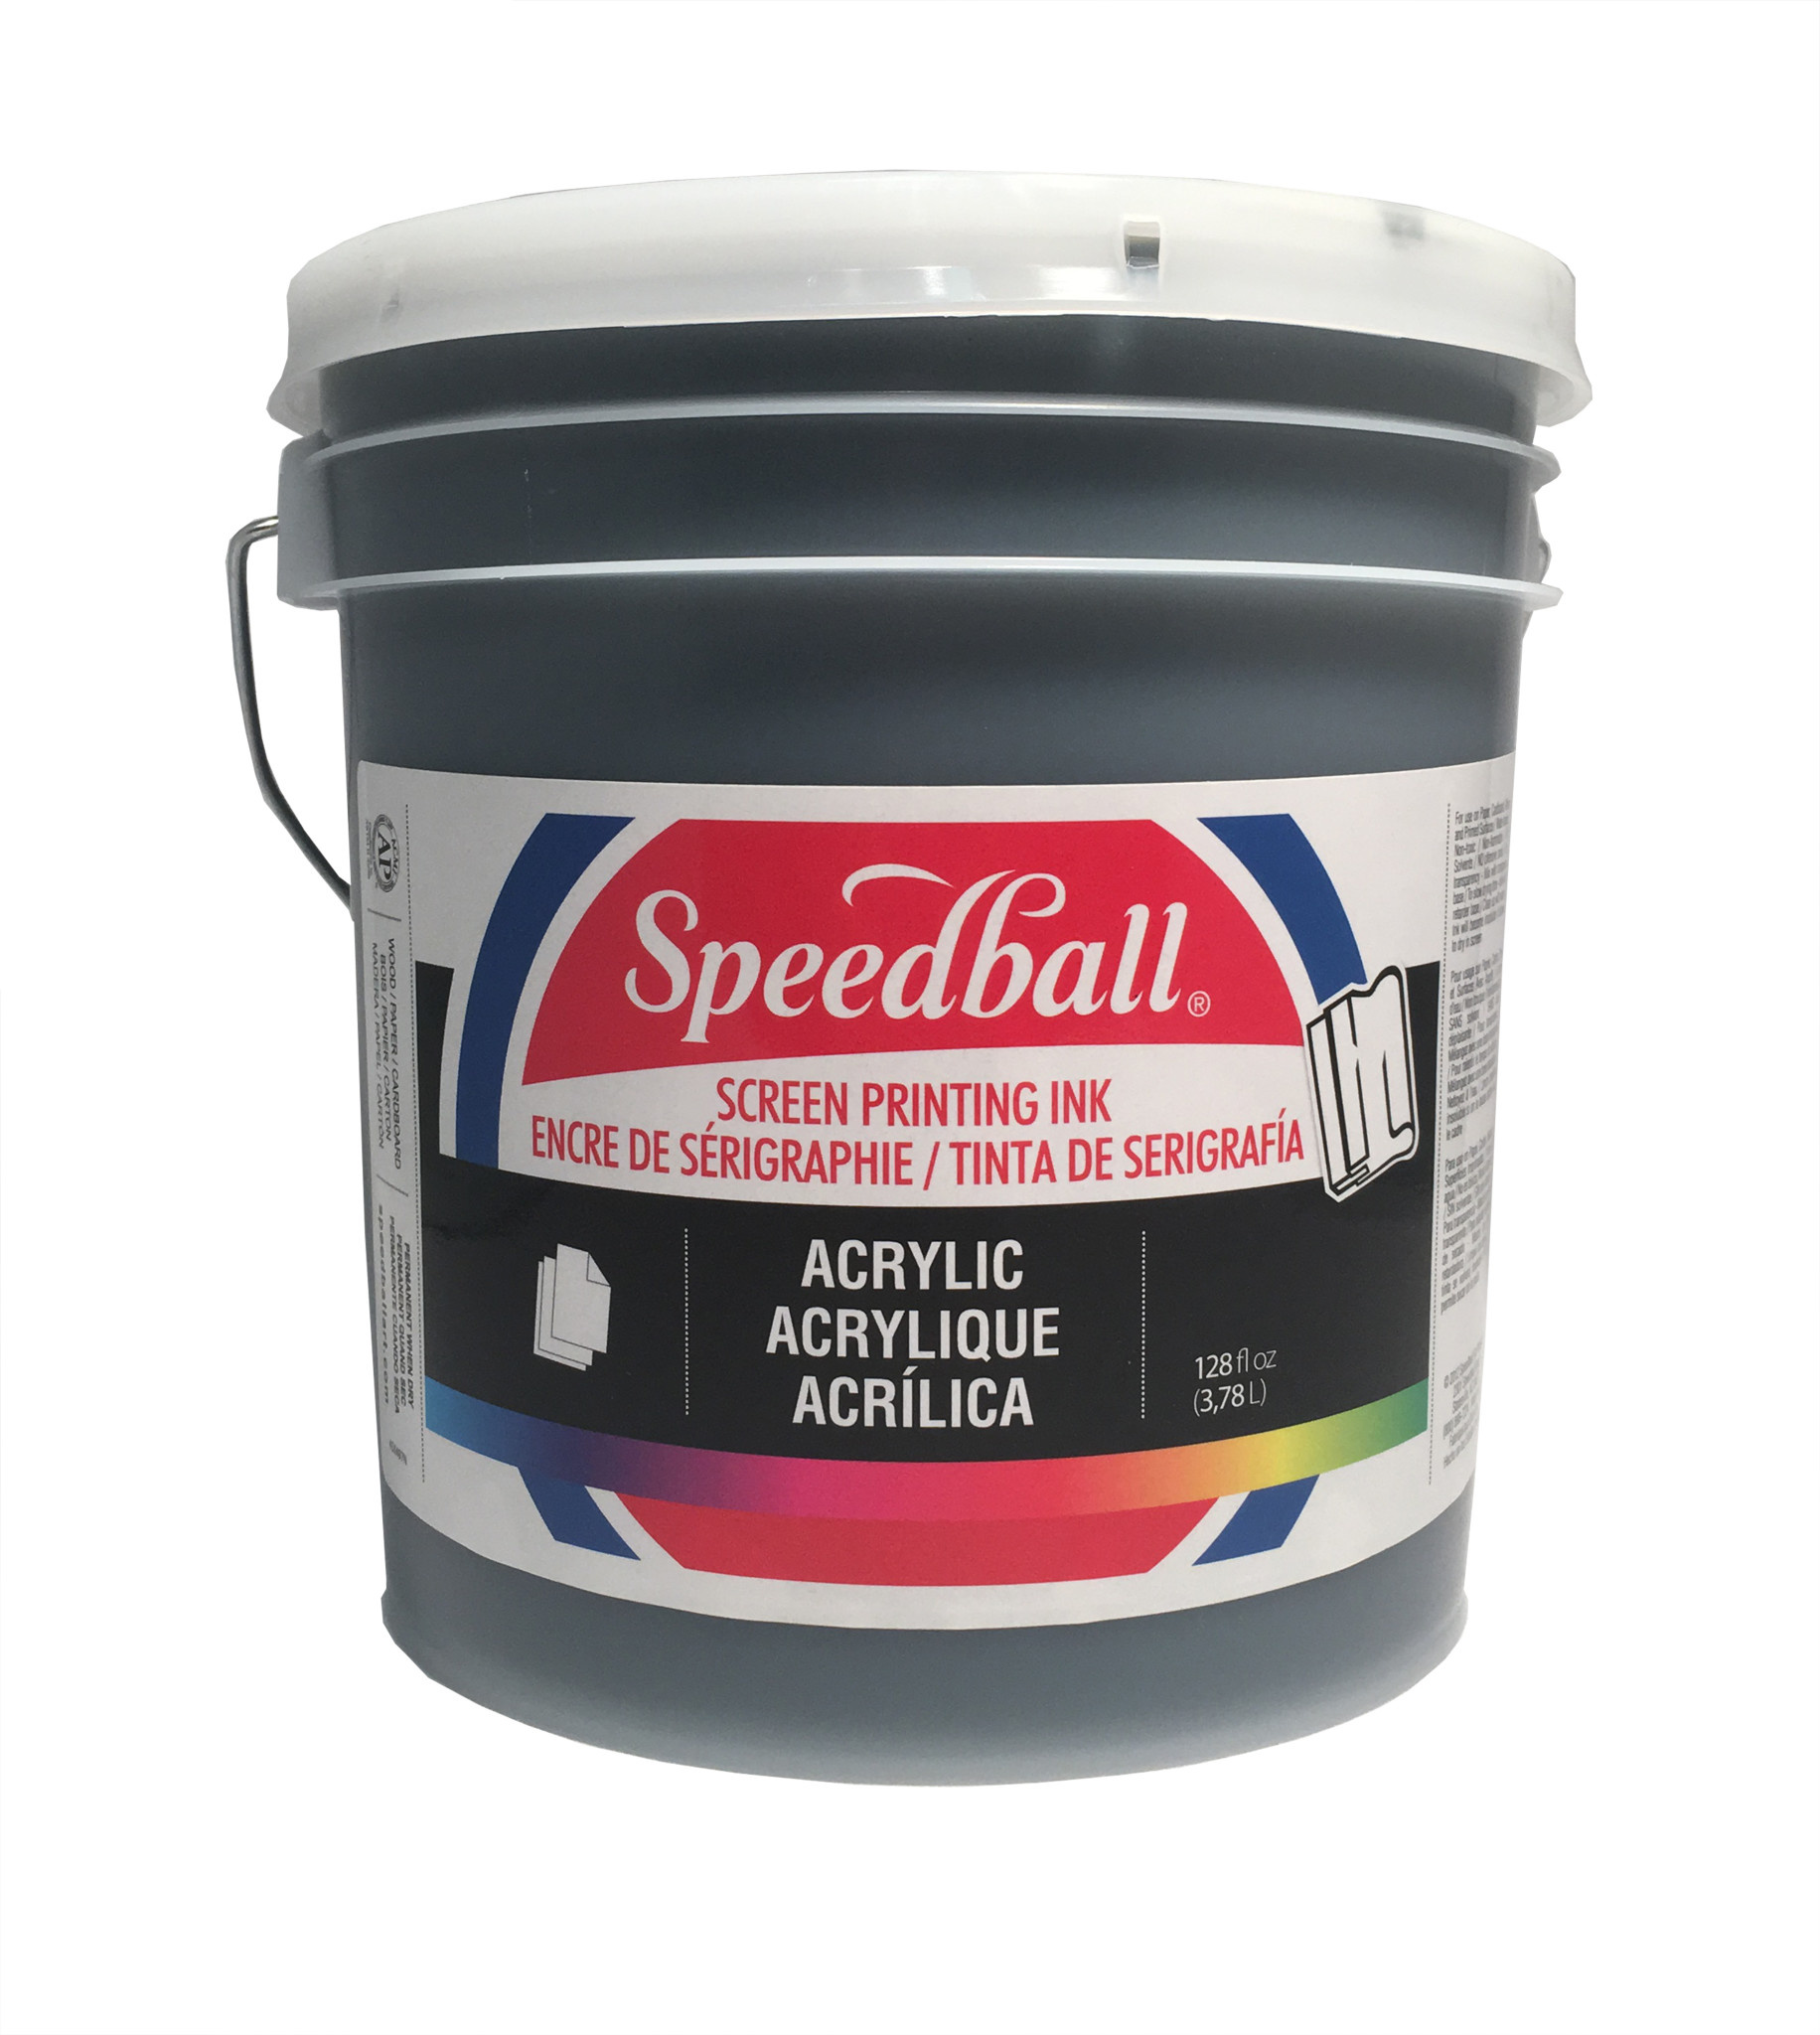 Speedball® Water-Soluble Block Printing Inks - Prime Art